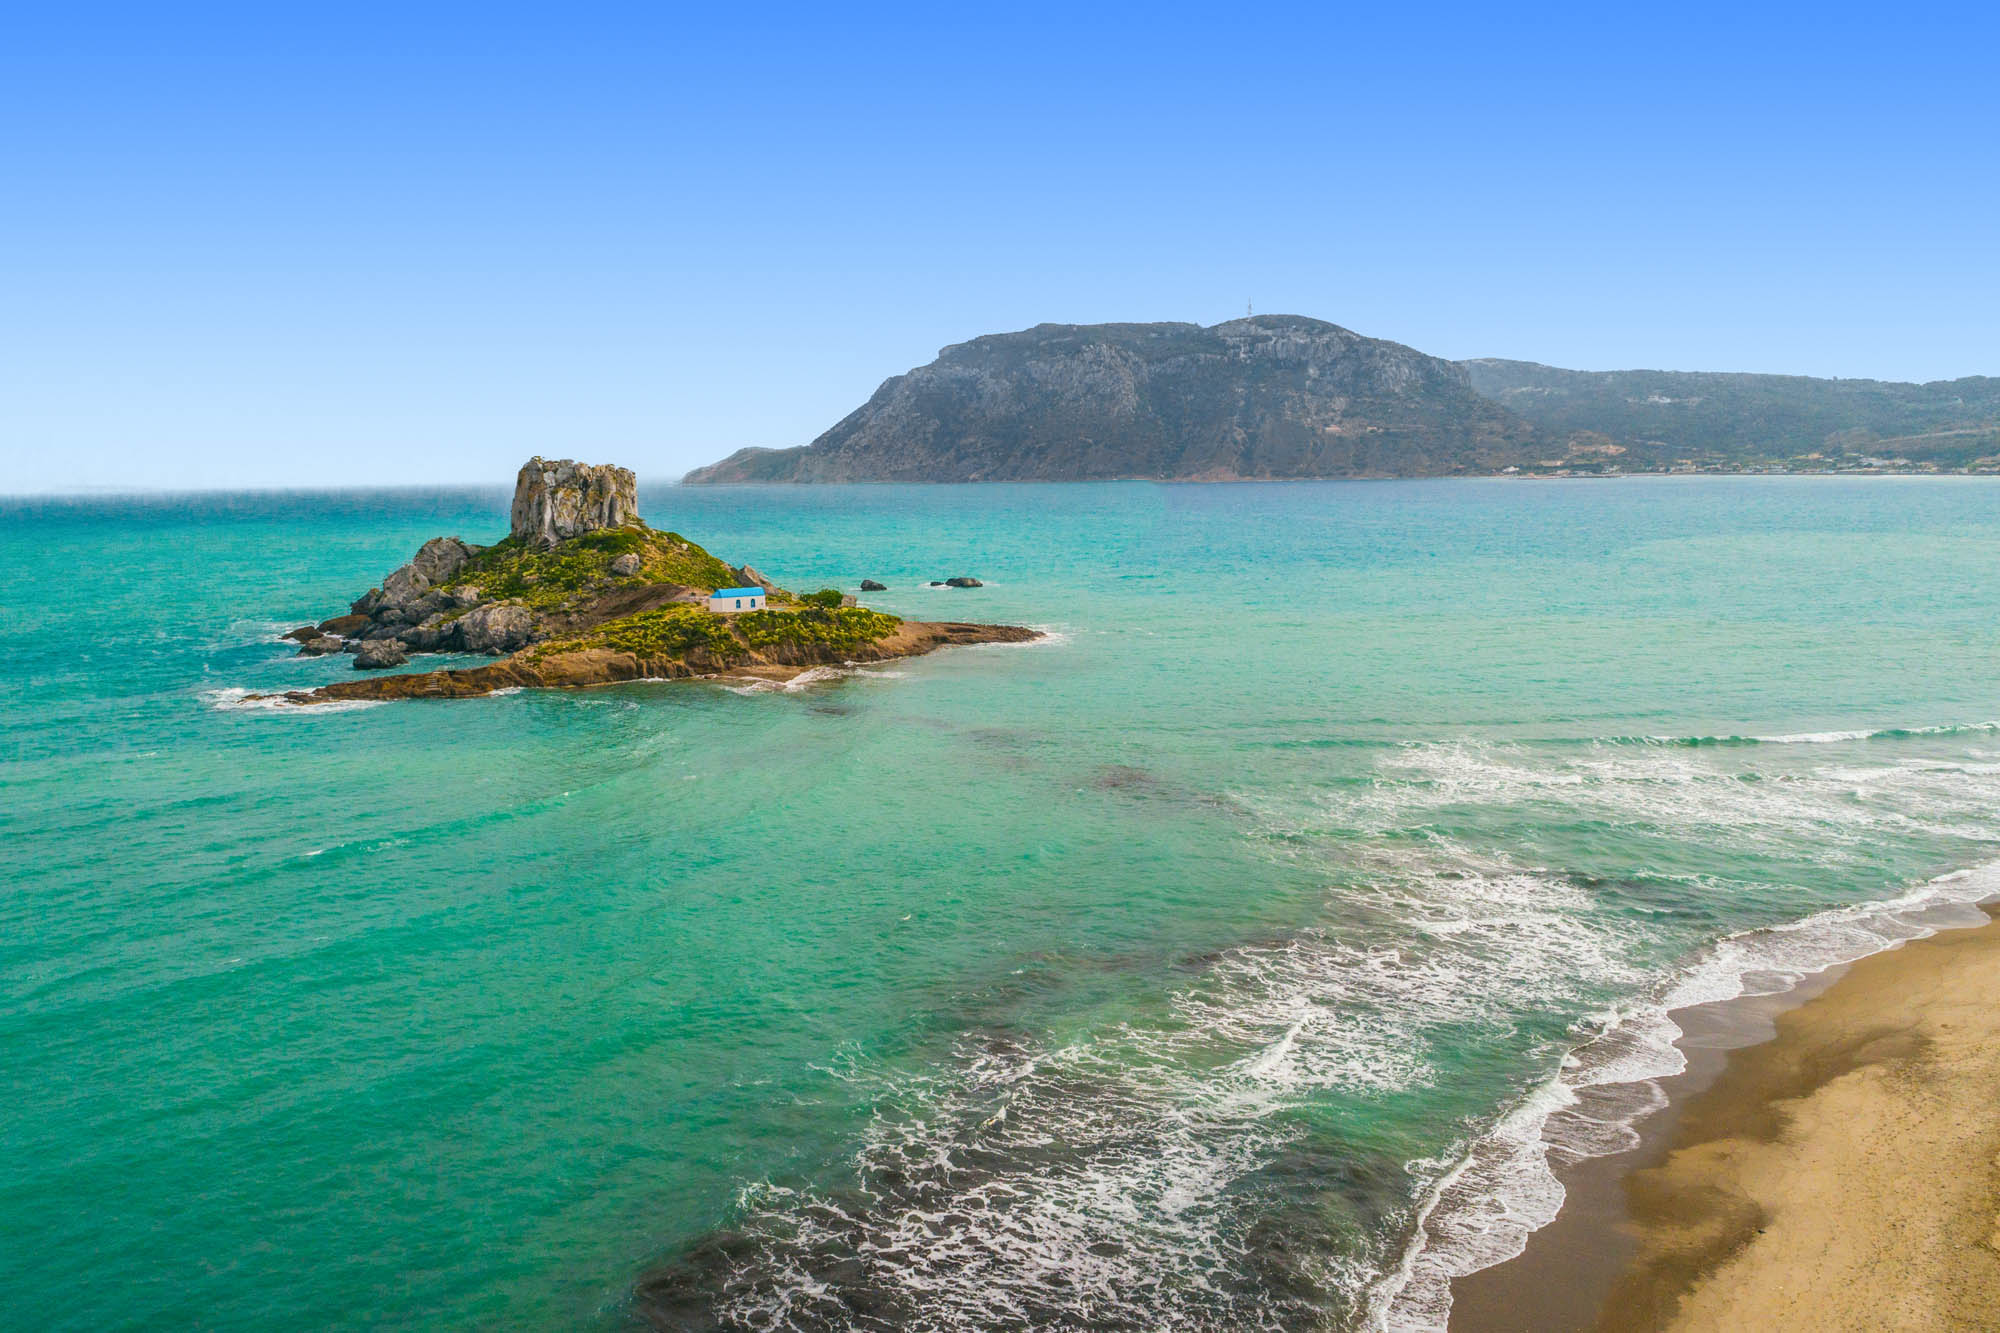 sławna wysepka z kapliczką niedalko wyspy Kos - widok z loty ptaka, a także na plażę i morze